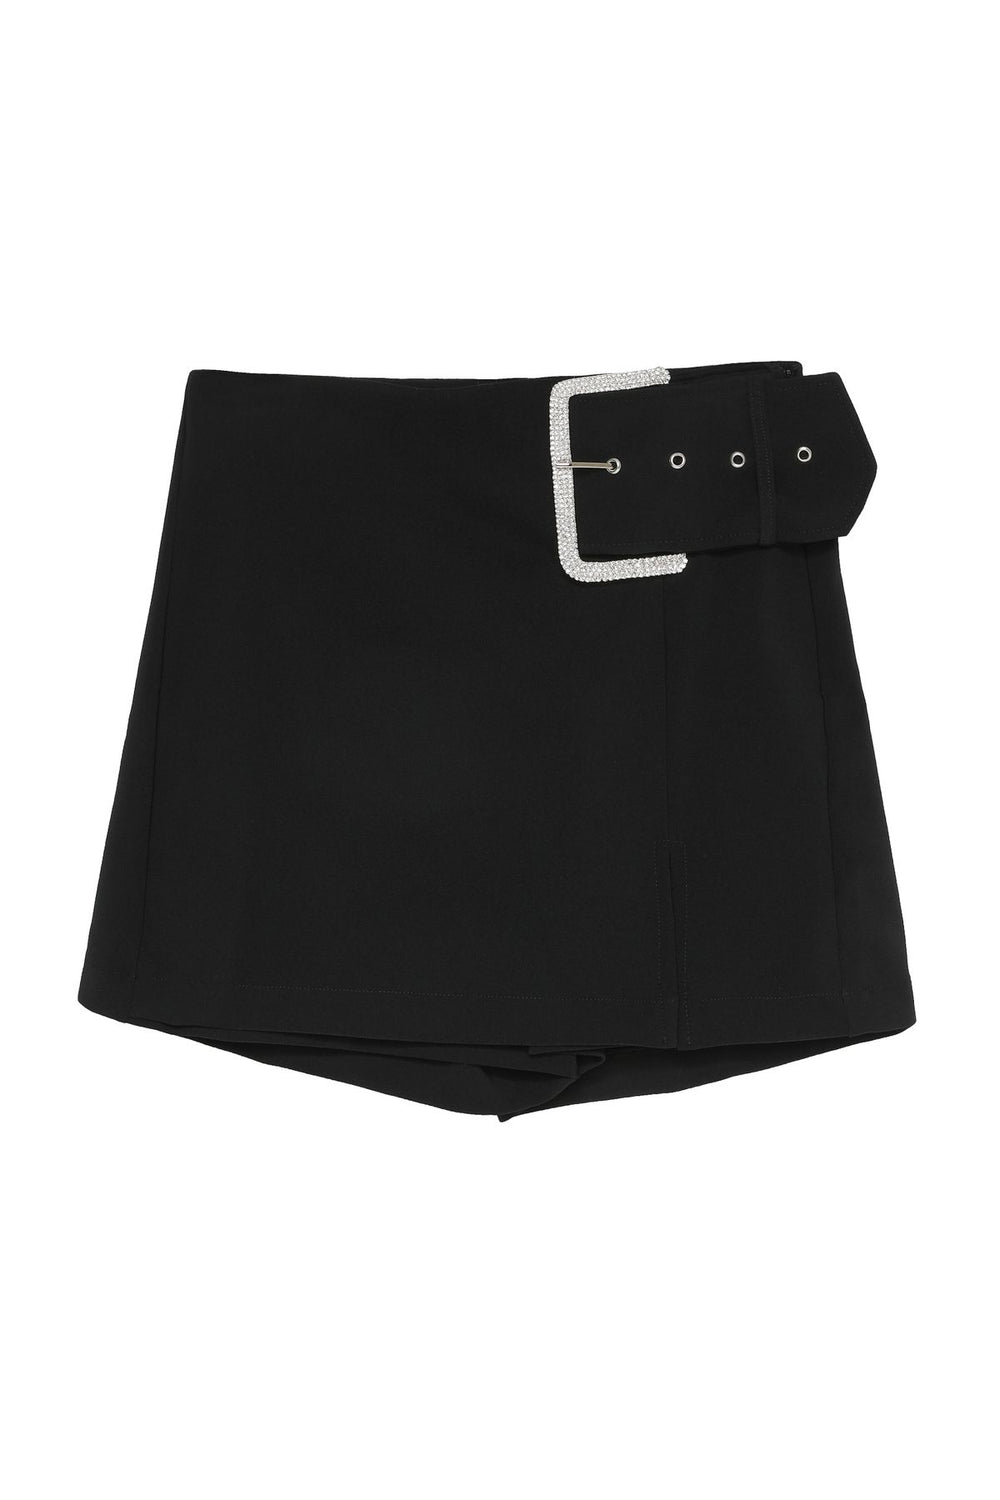 Buckle Detailed Mini Short Skirt Black